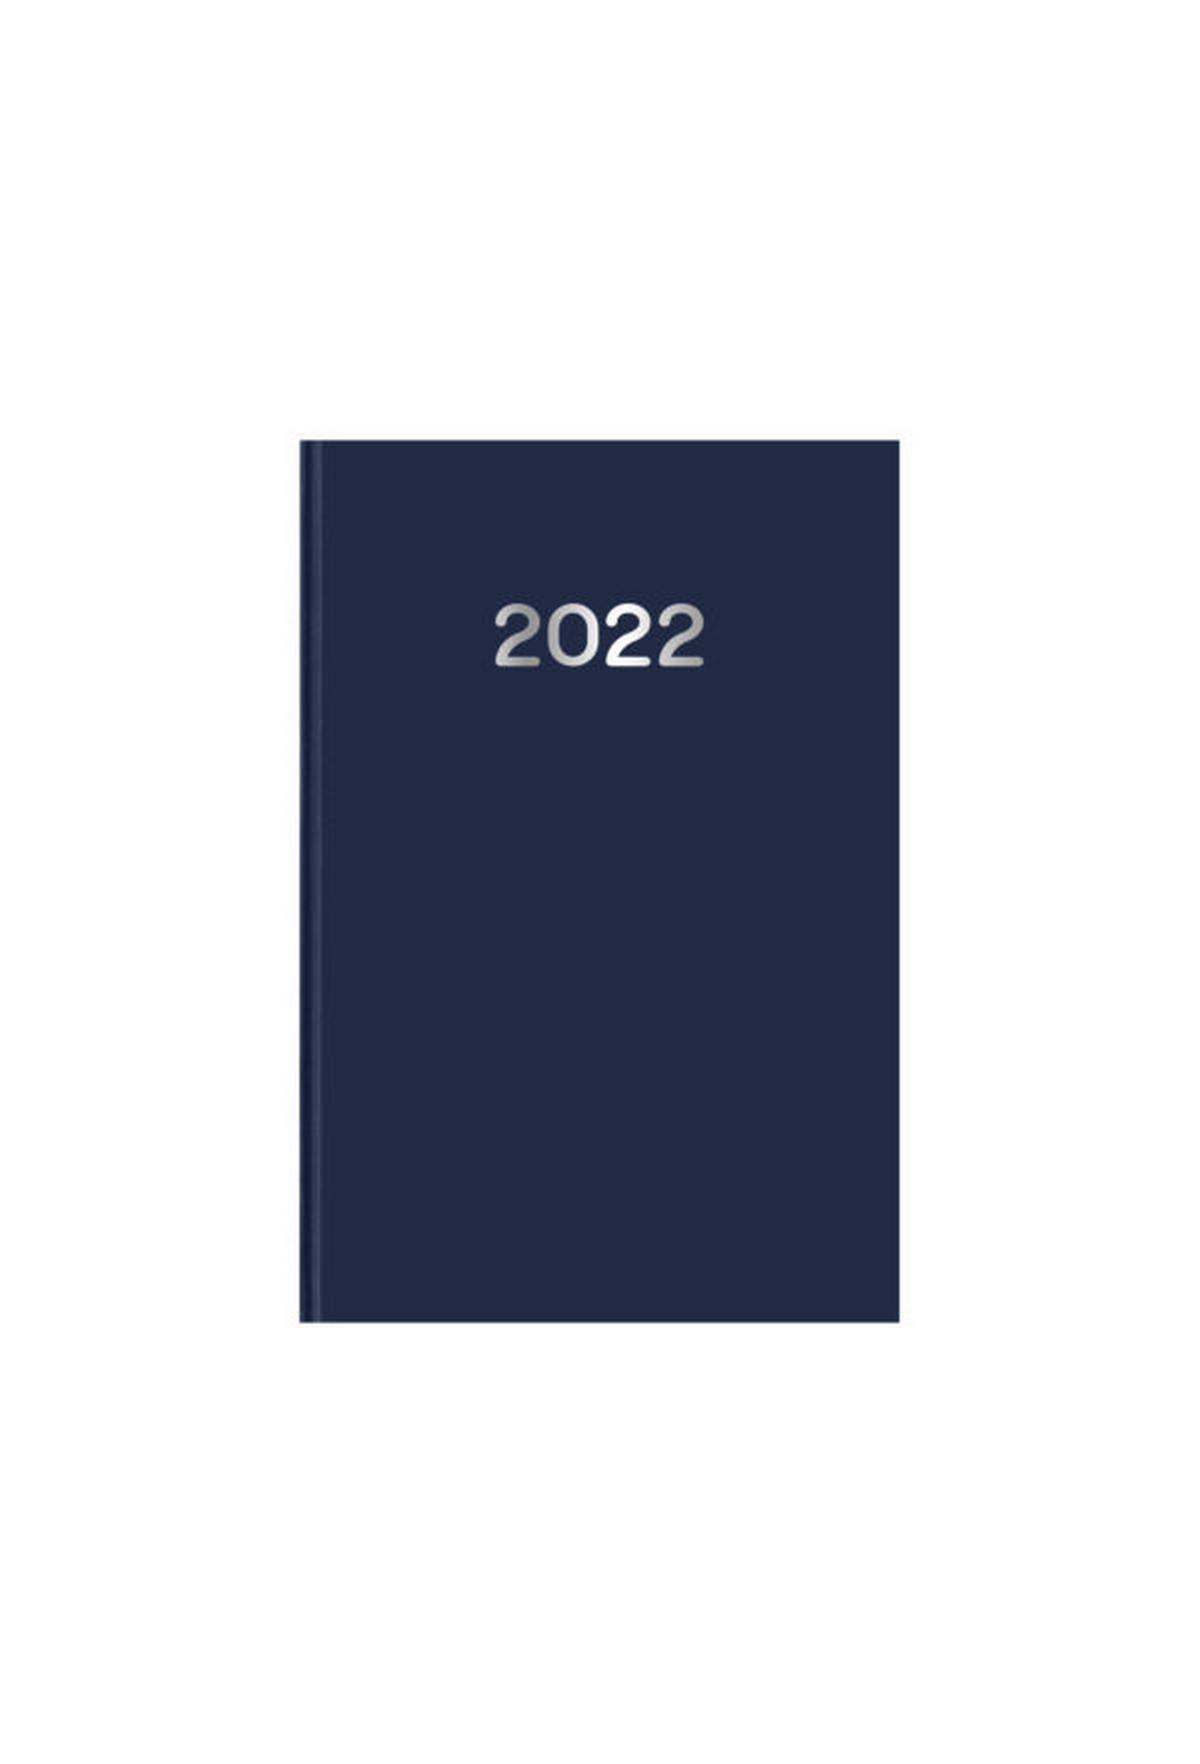 Ημερήσιο ημερολόγιο 2022 simple μπλε 17 x 25 cm